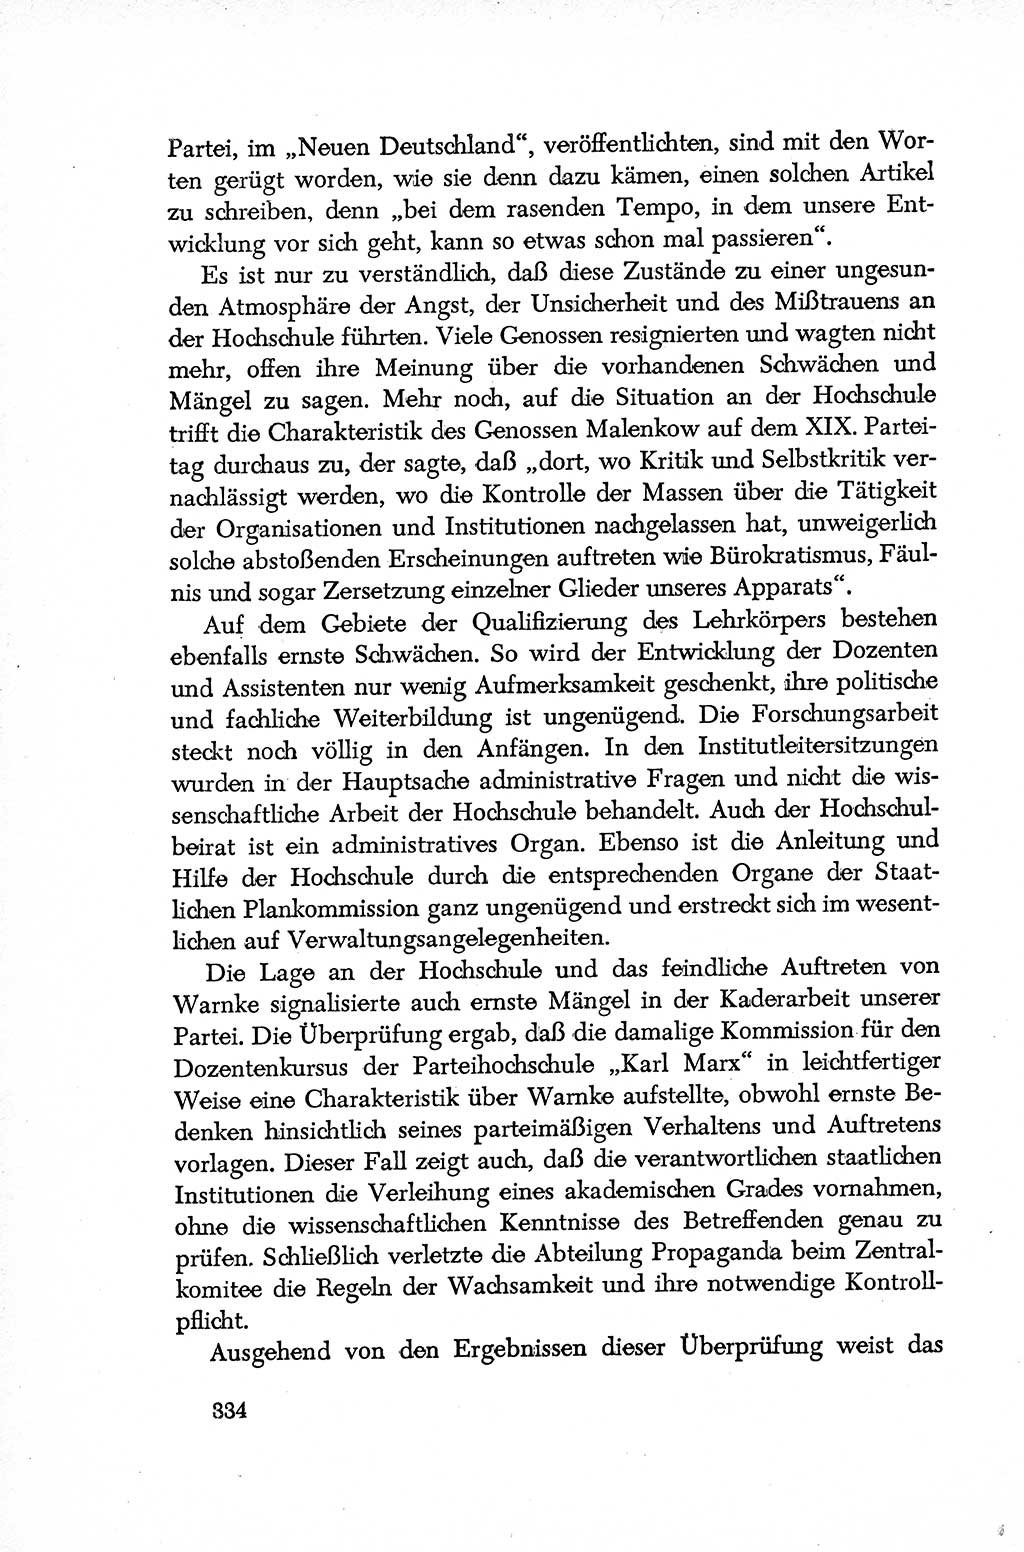 Dokumente der Sozialistischen Einheitspartei Deutschlands (SED) [Deutsche Demokratische Republik (DDR)] 1952-1953, Seite 334 (Dok. SED DDR 1952-1953, S. 334)